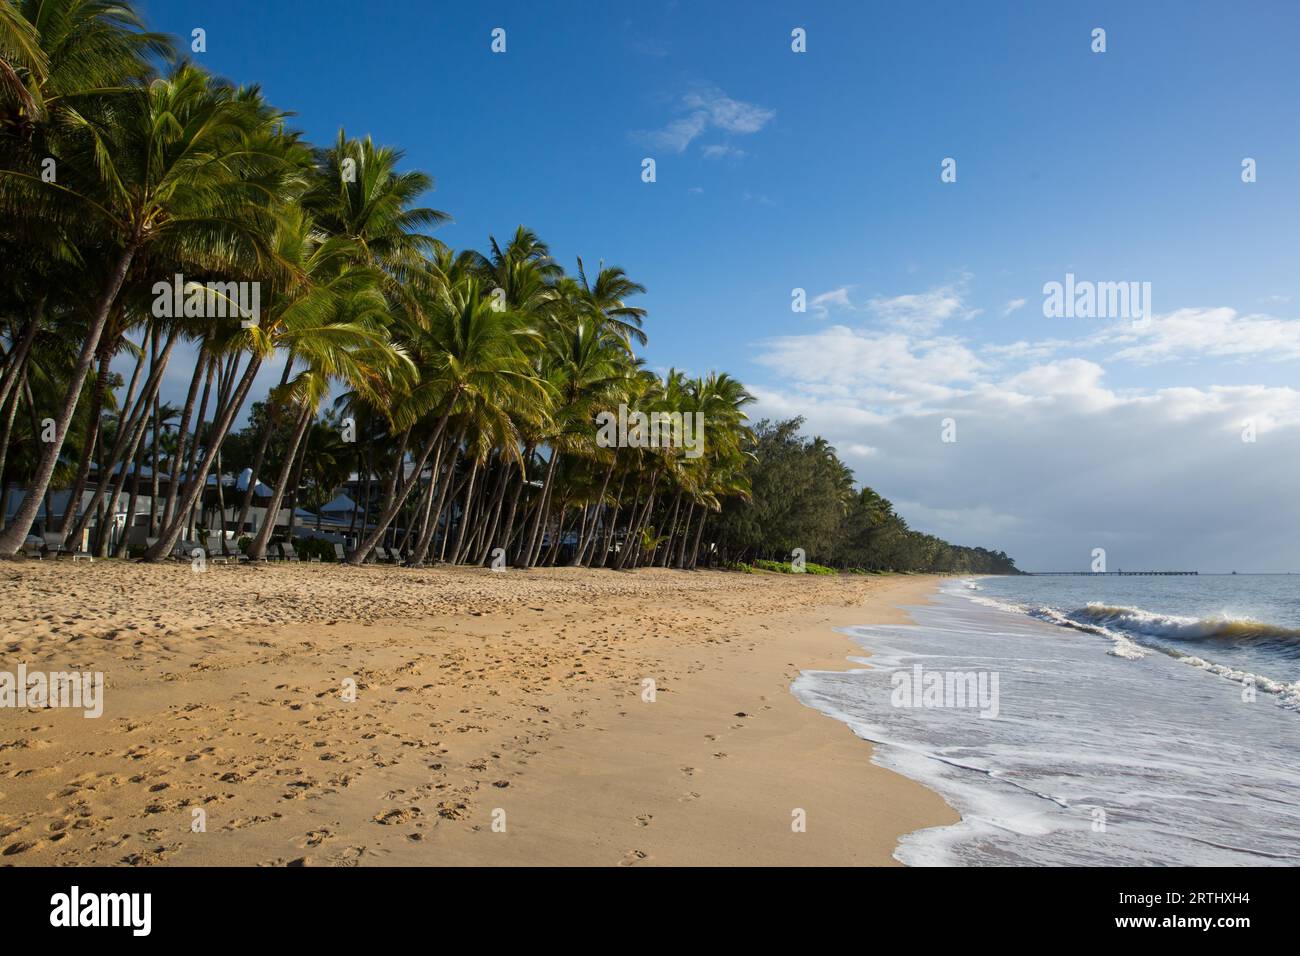 Le célèbre front de mer idyllique de Palm Cove un jour d'hiver dans le Queensland, en Australie Banque D'Images